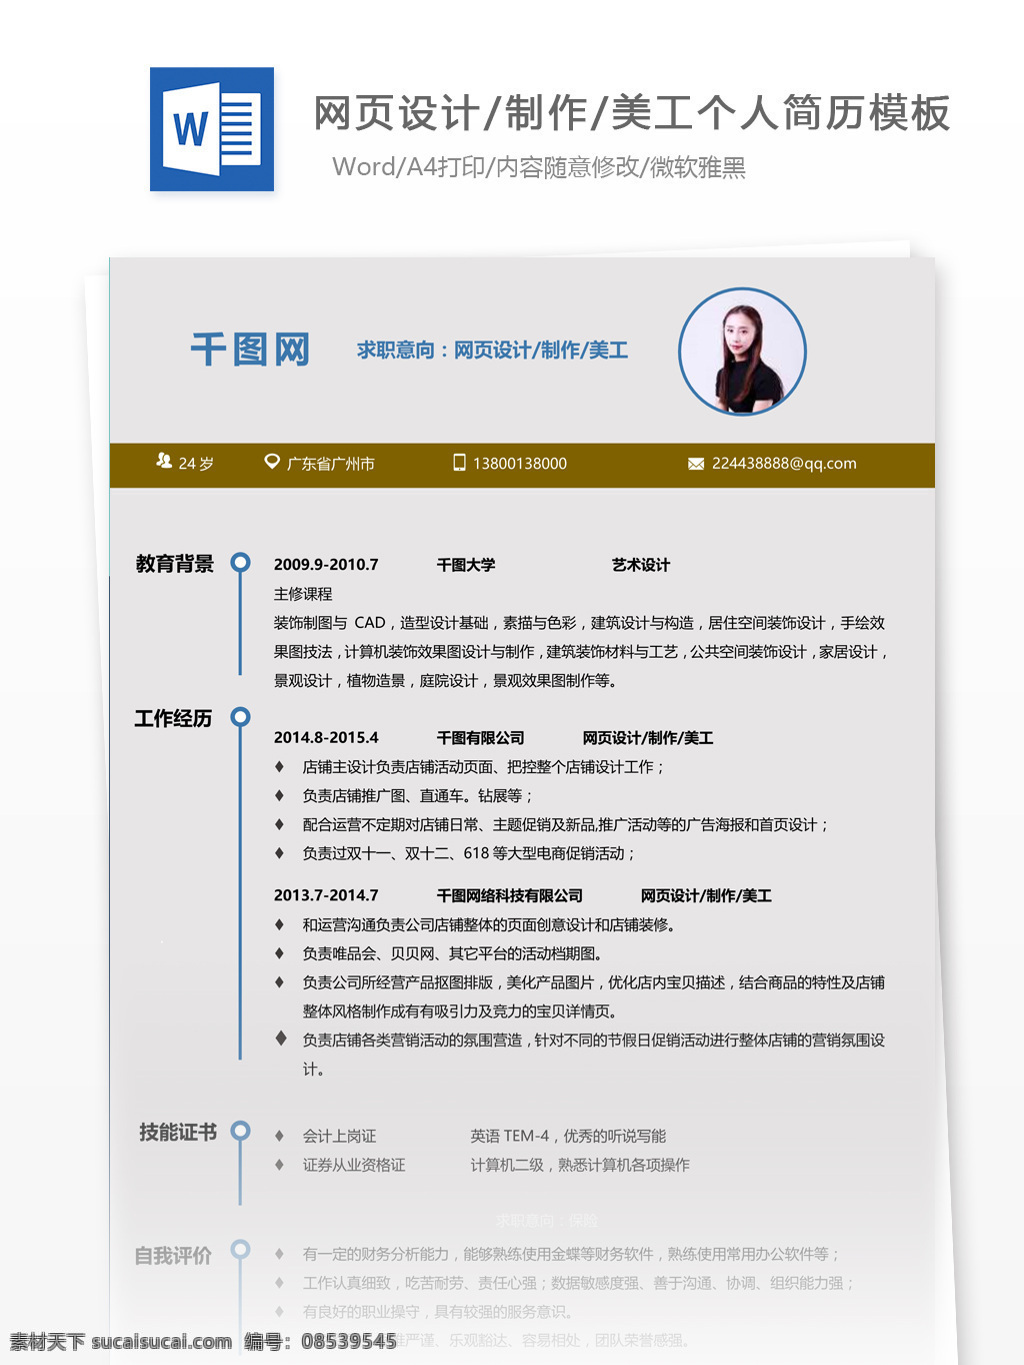 广州 美 学院 网页设计 制作 美工 简历 范文 个人简历 简历模板 应届毕业生 个人简历模板 模板